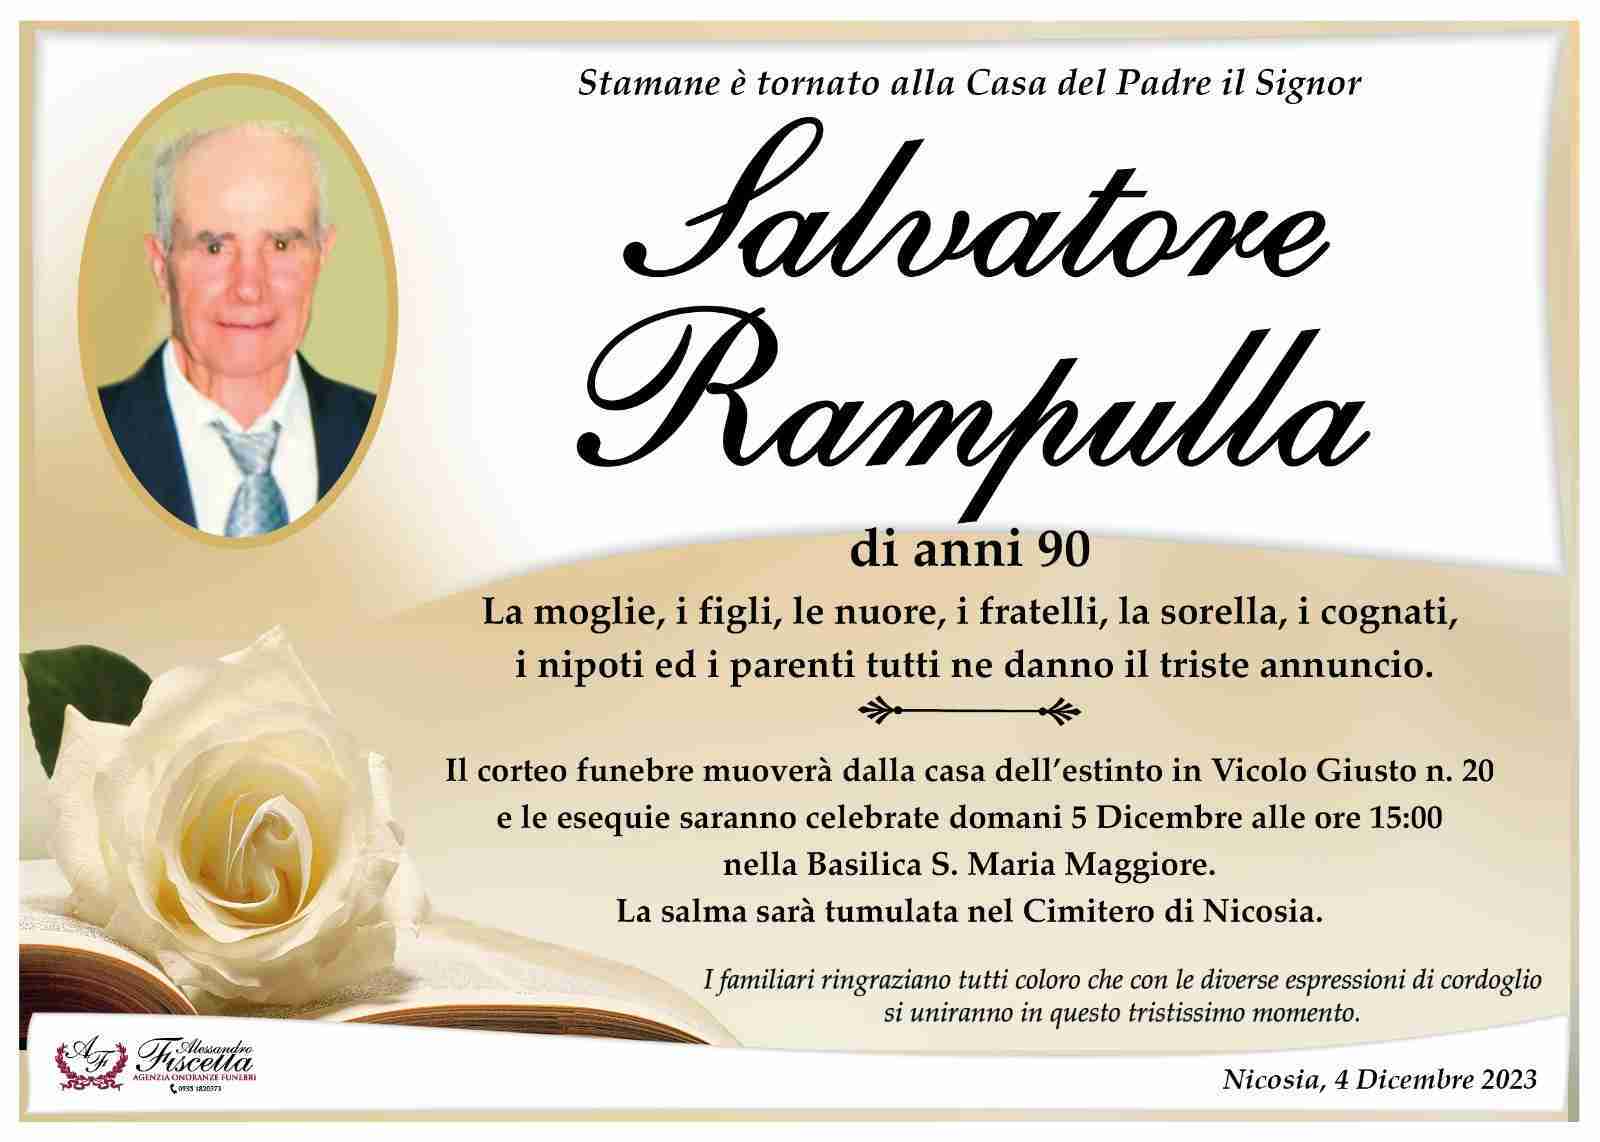 Salvatore Rampulla